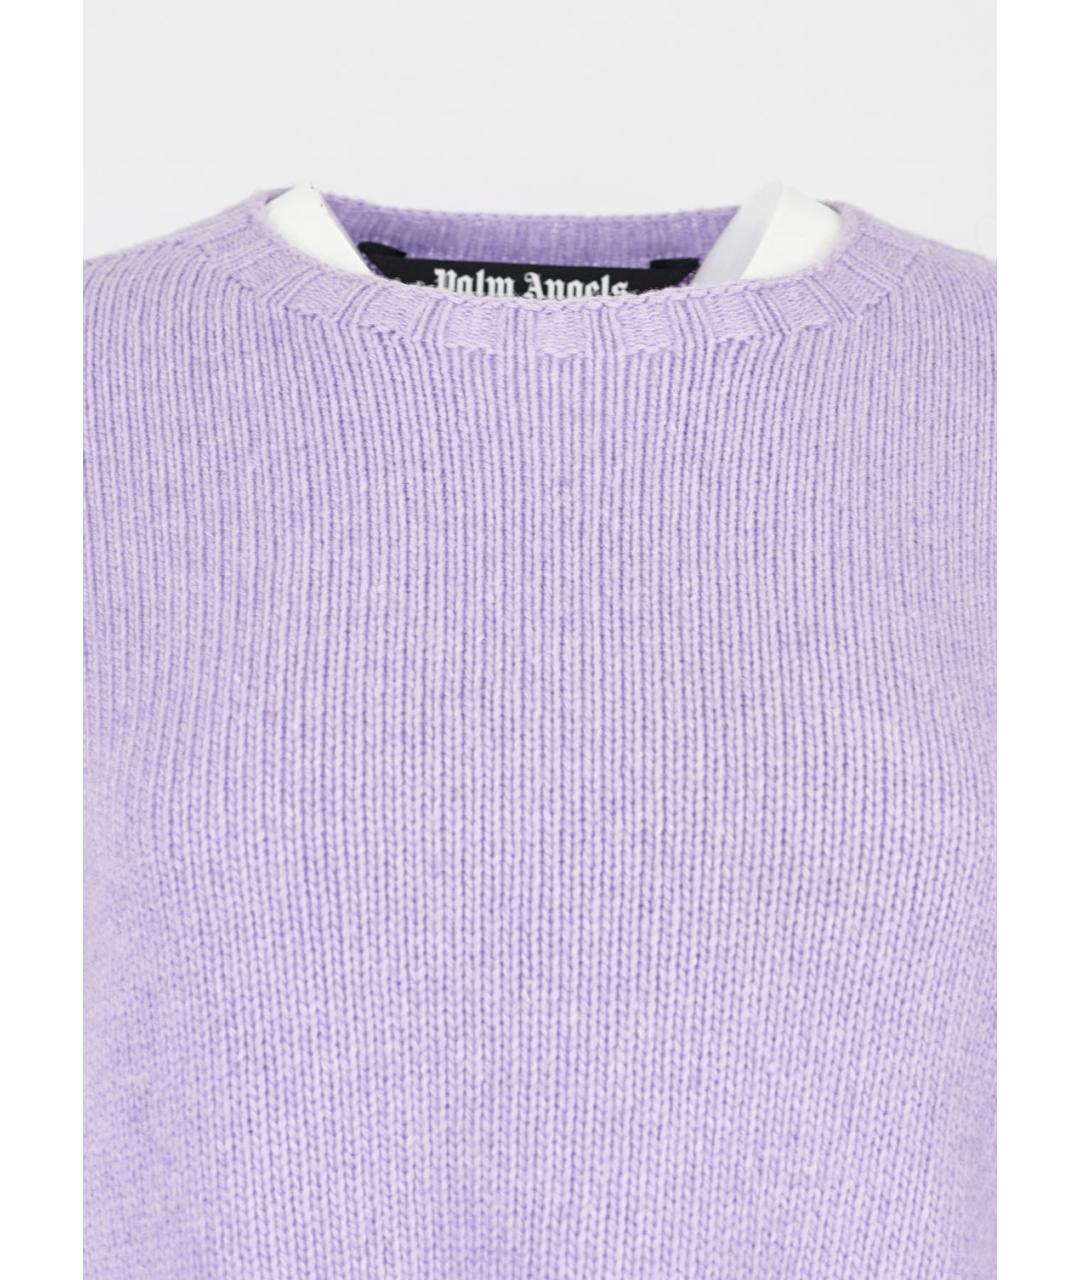 PALM ANGELS Фиолетовый шерстяной джемпер / свитер, фото 4